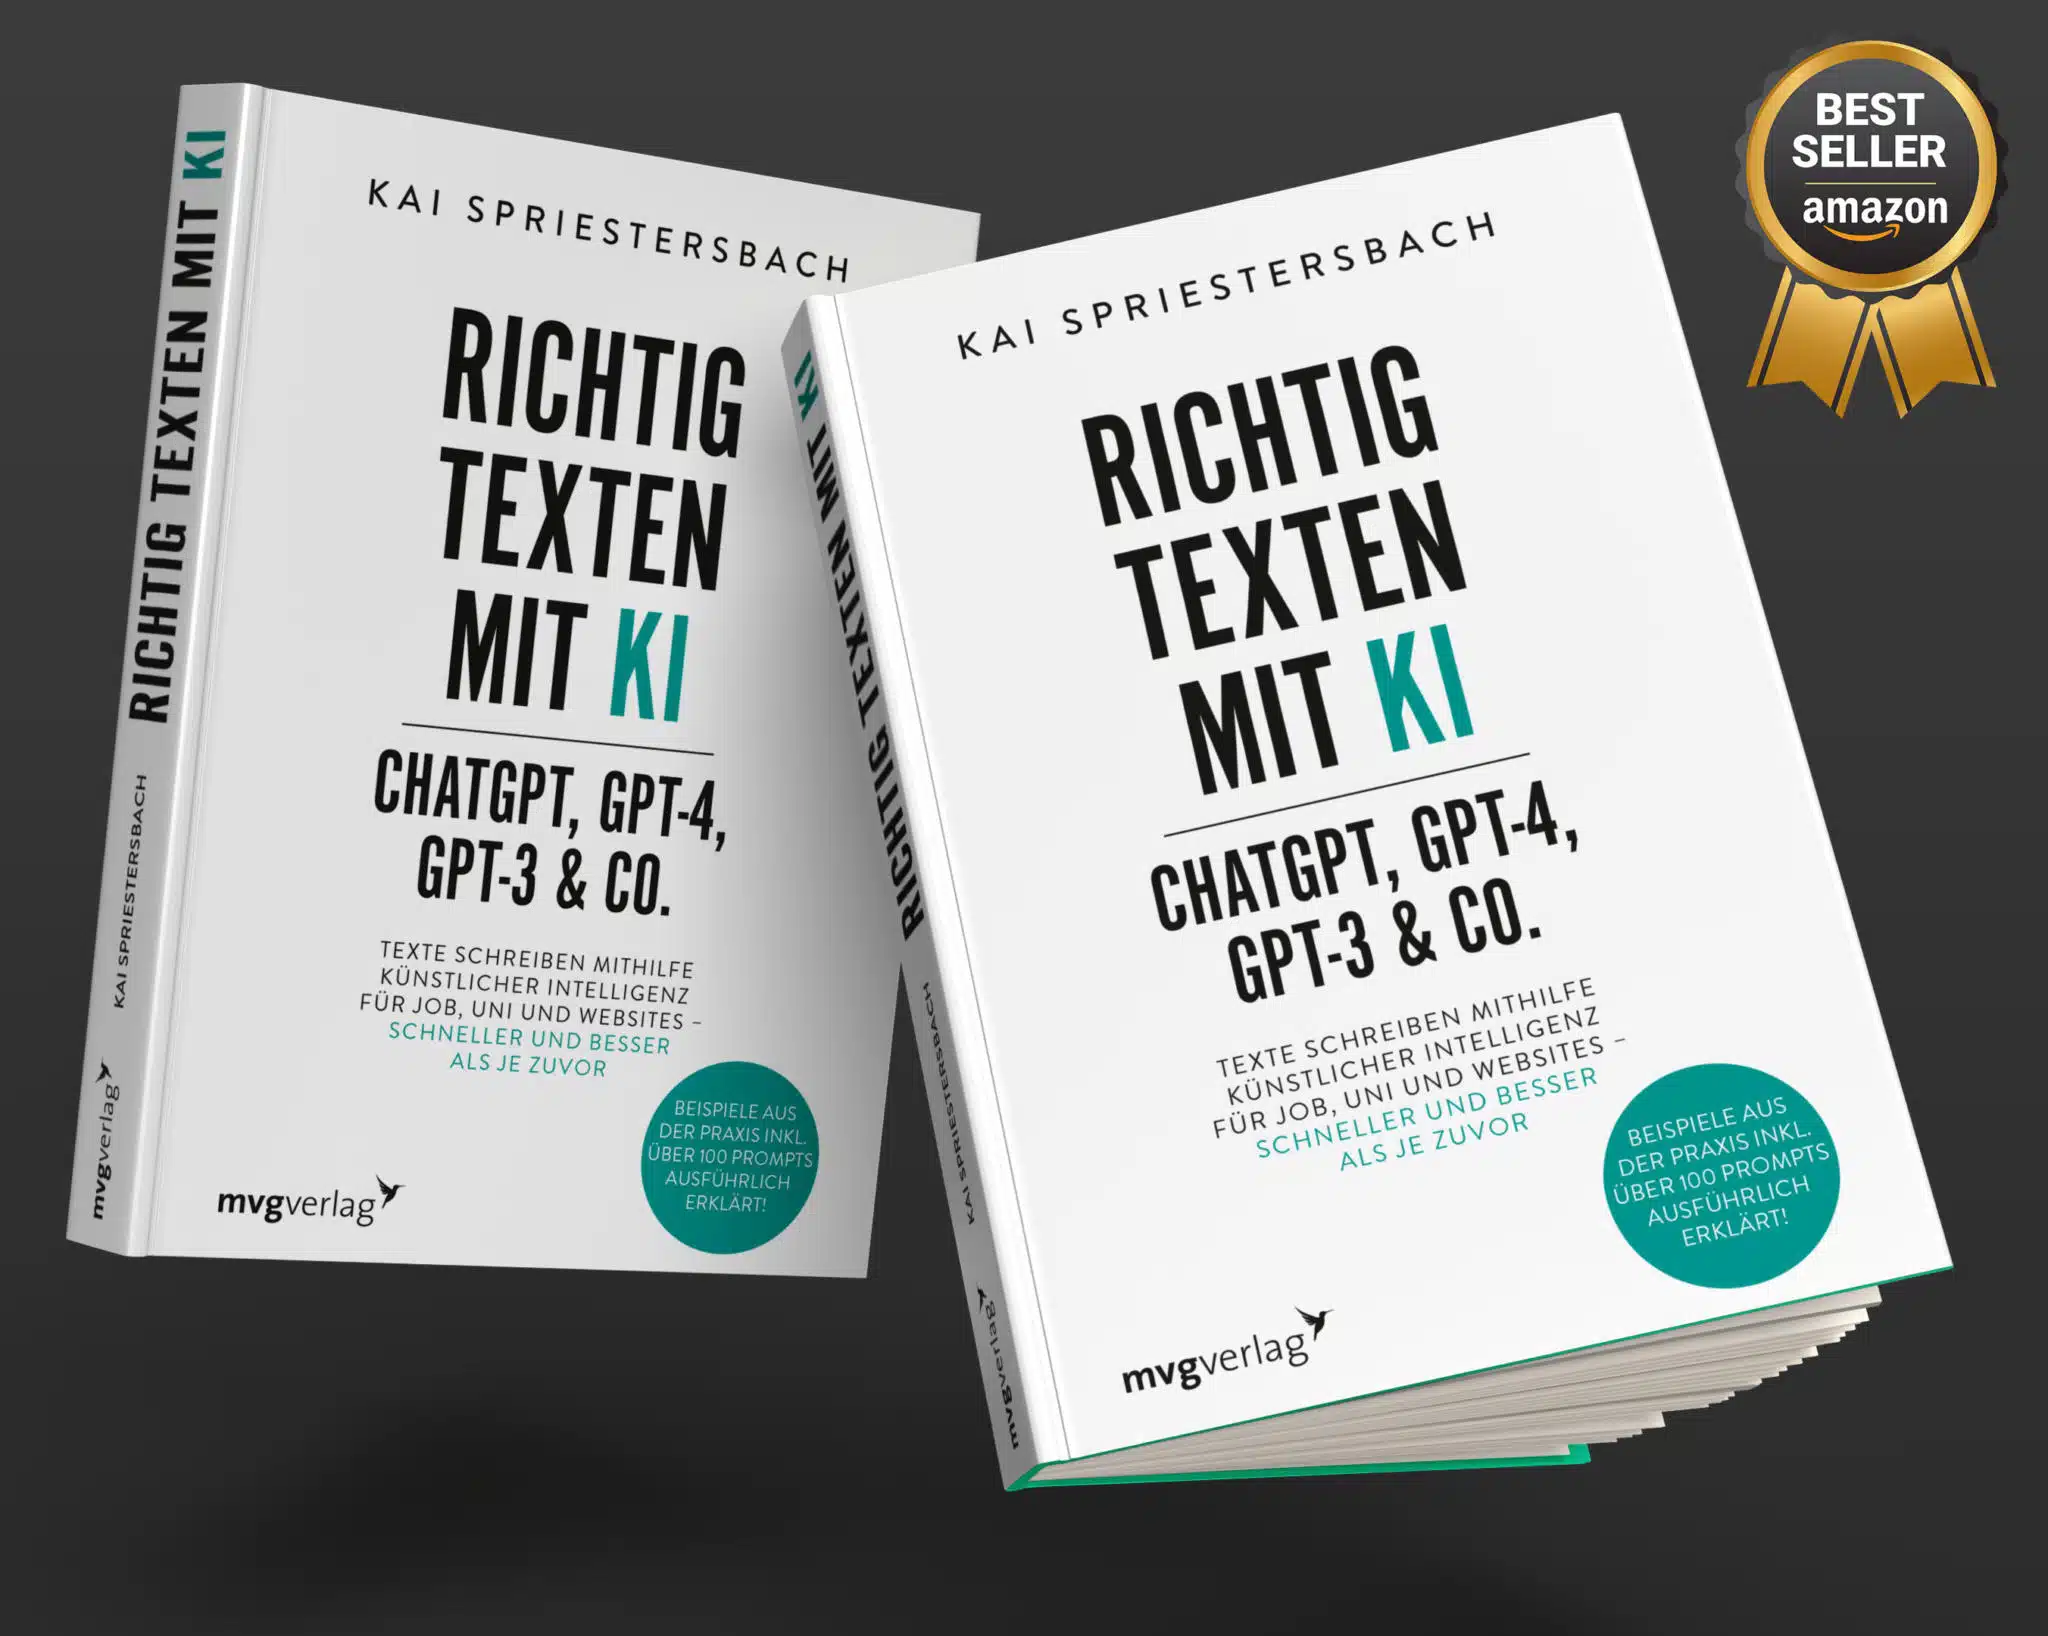 Buch „Richtig Texten mit KI: ChatGPT, GPT-4, GPT-3 & Co.“ von Kai Spriestersbach ist Bestseller bei Amazon. Texte schreiben mit Hilfe Künstlicher Intelligenz für Job, Uni und Websites – Schneller und besser als je zuvor.